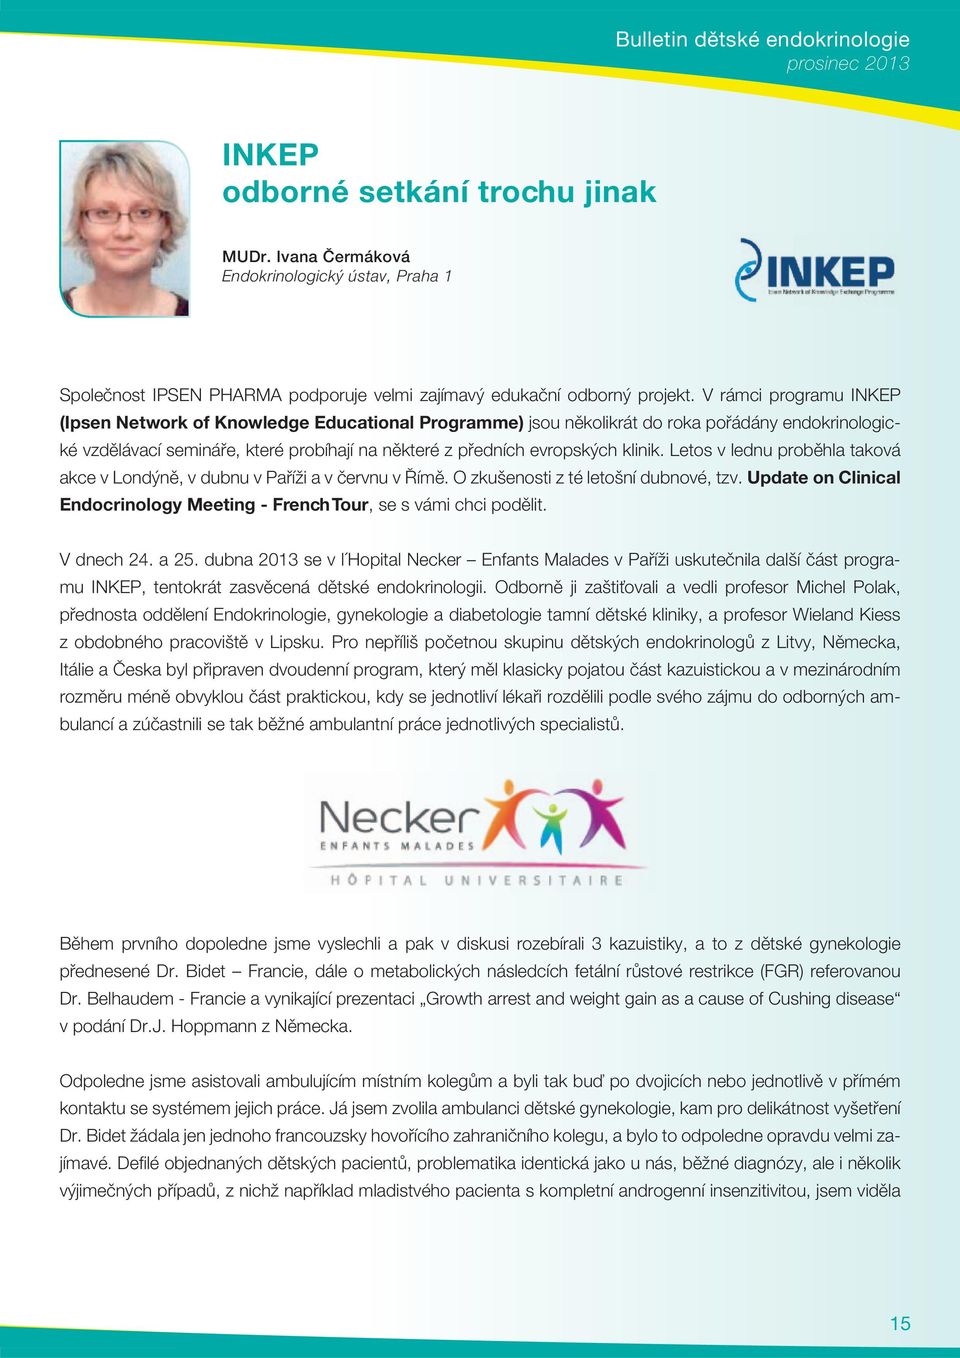 V rámci programu INKEP (Ipsen Network of Knowledge Educational Programme) jsou několikrát do roka pořádány endokrinologické vzdělávací semináře, které probíhají na některé z předních evropských